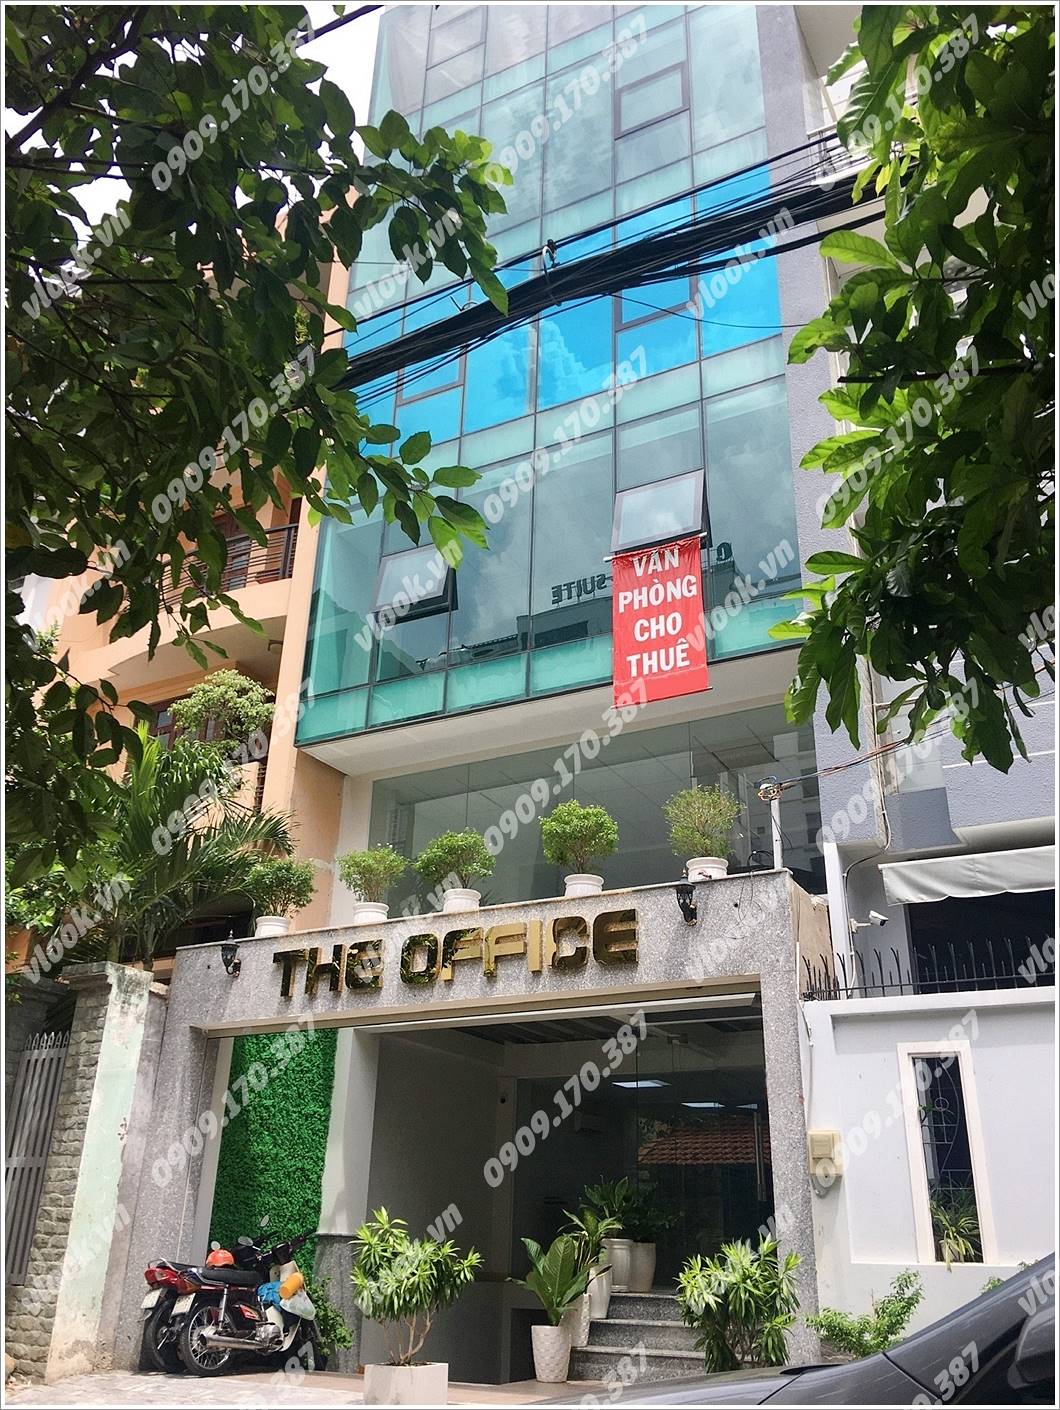 Cao ốc văn phòng cho thuê The Office, Ung văn Khiêm, Quận Bình Thạnh - vlook.vn